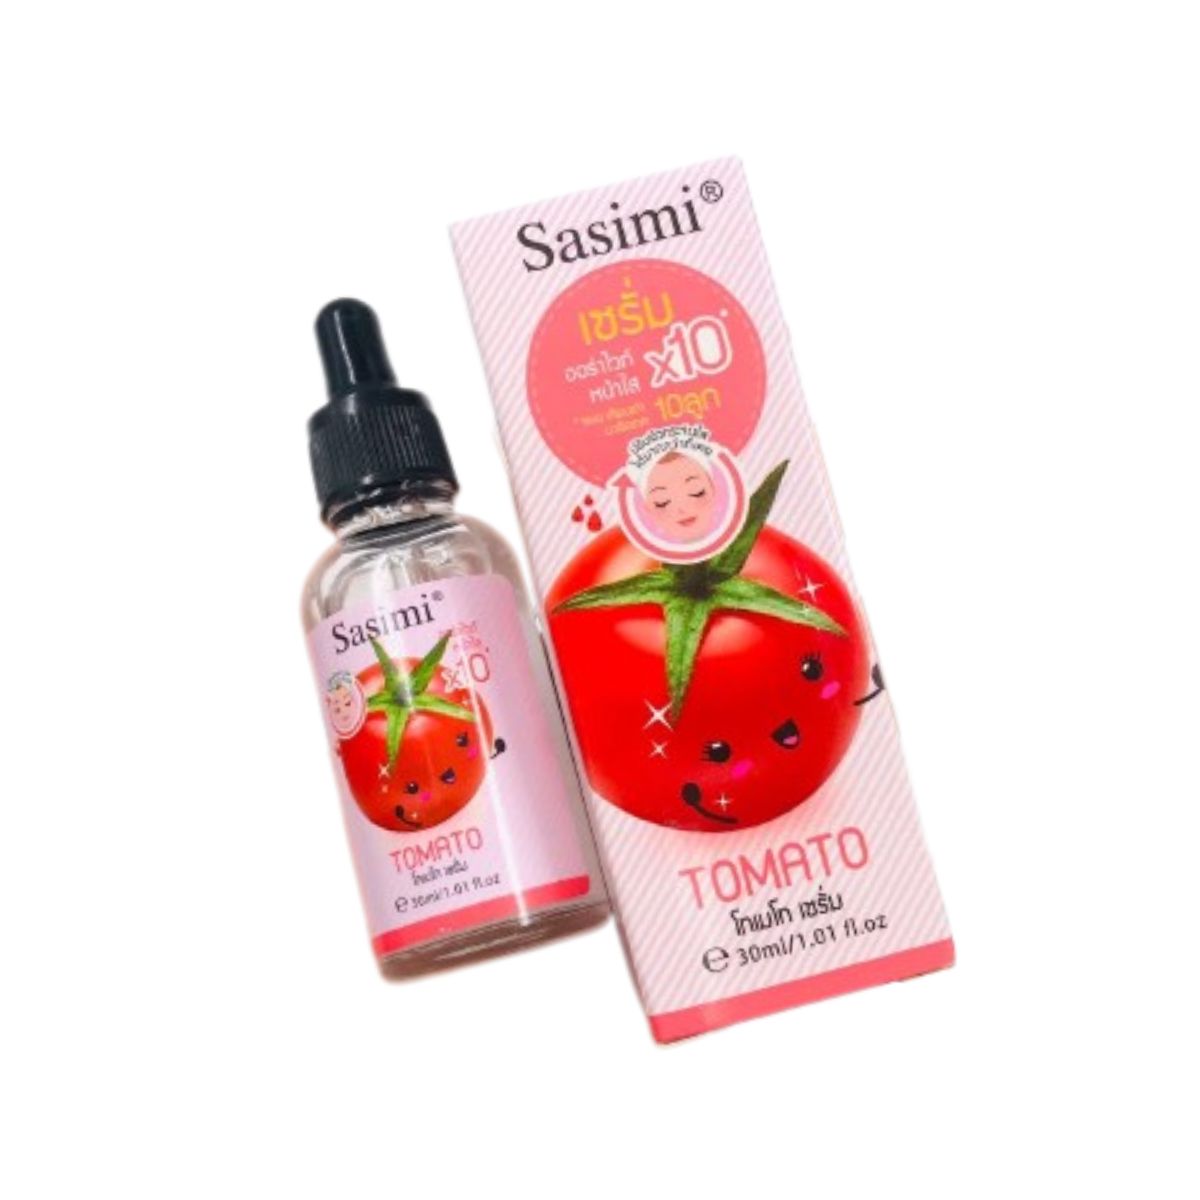 Sasimi Tomato Serum - S-12083 - 30ml